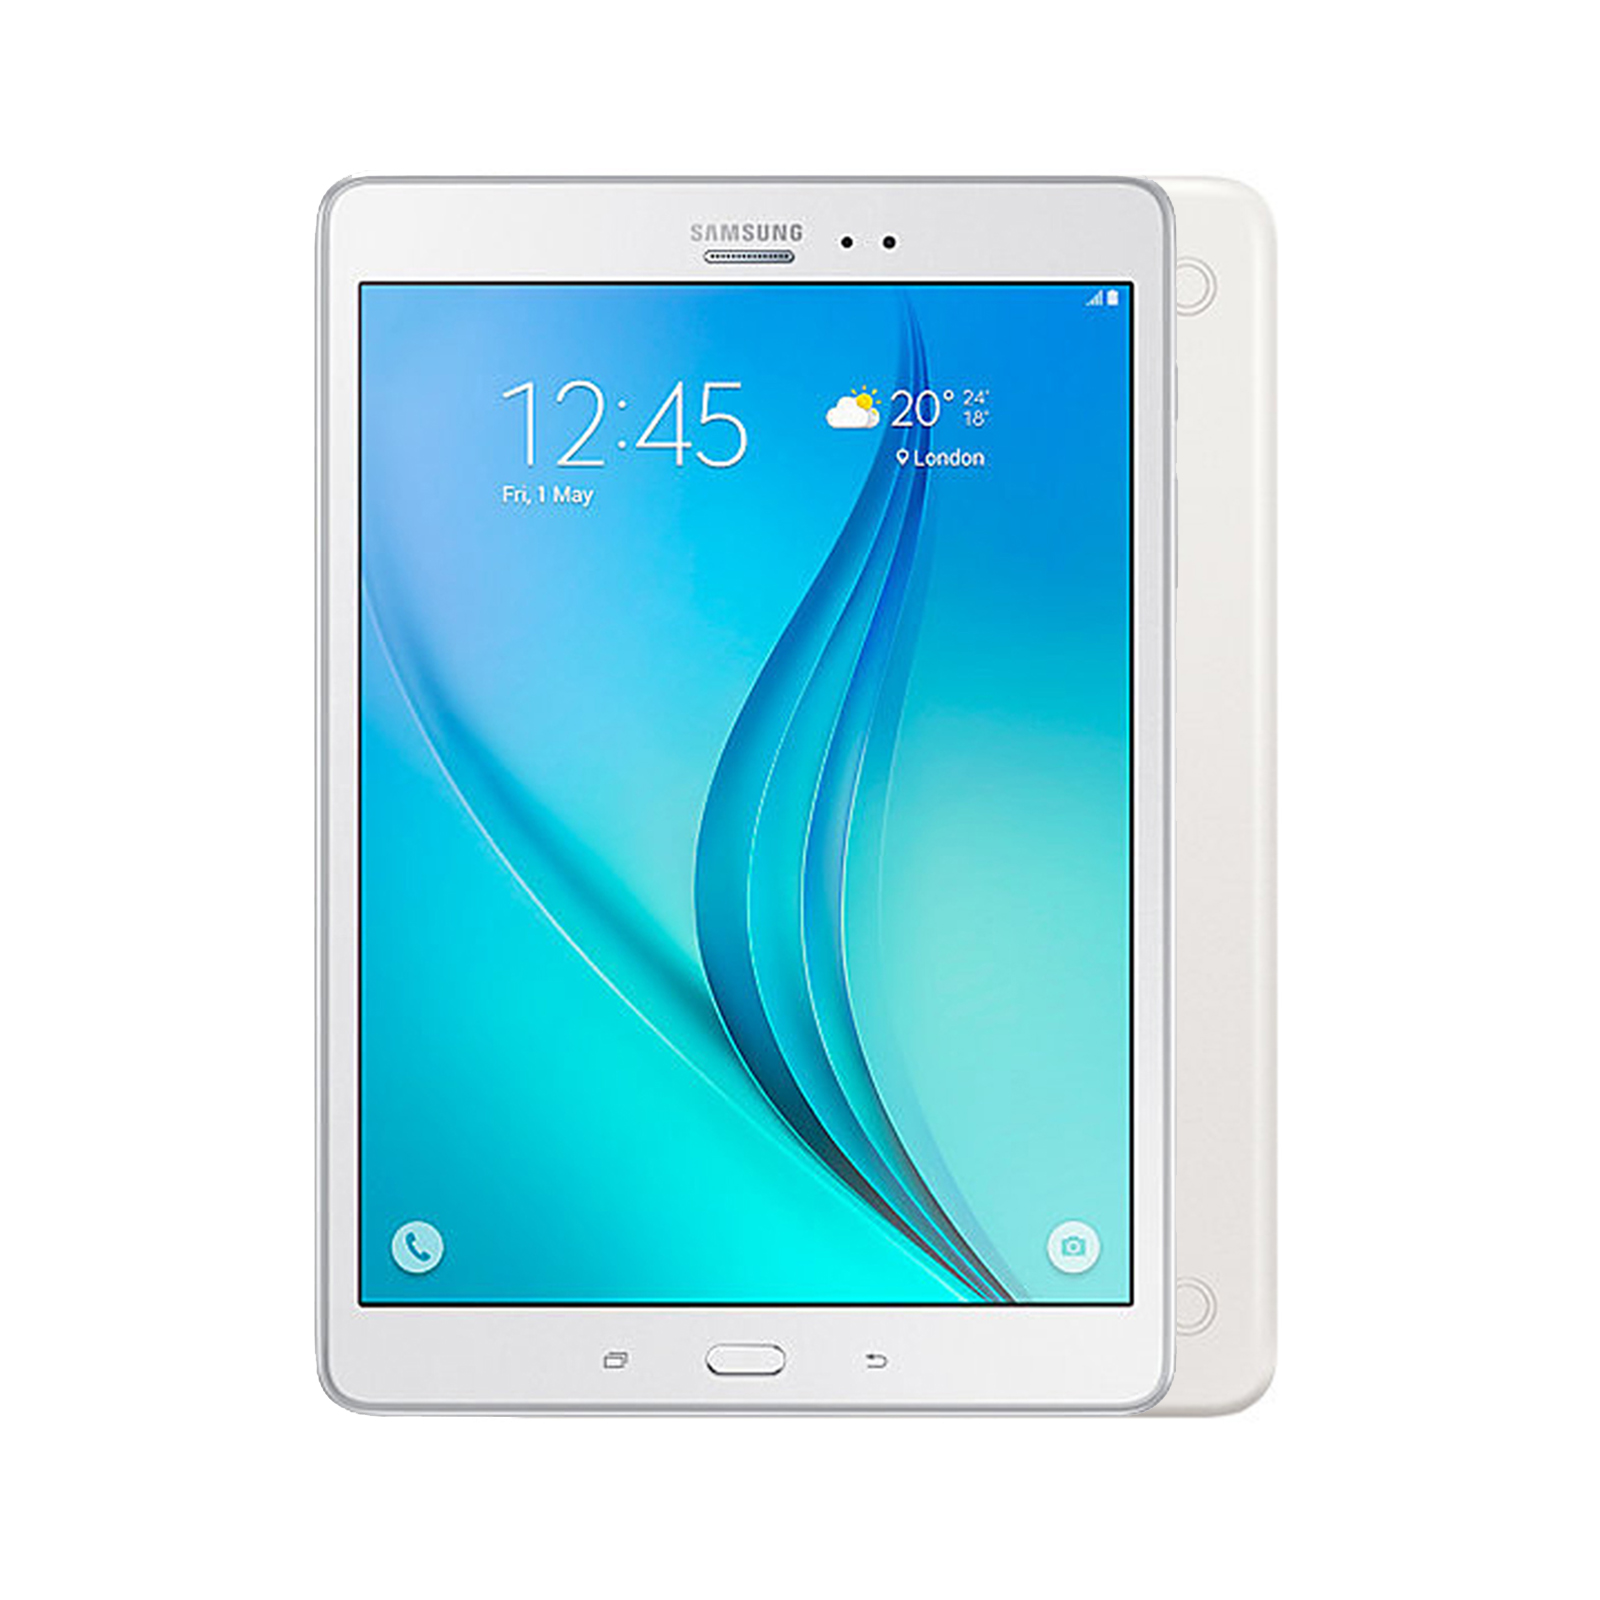 Samsung Galaxy Tab A 8.0 [ Wi-Fi + Cellular] [16GB] [White] [Brand New] [24M]